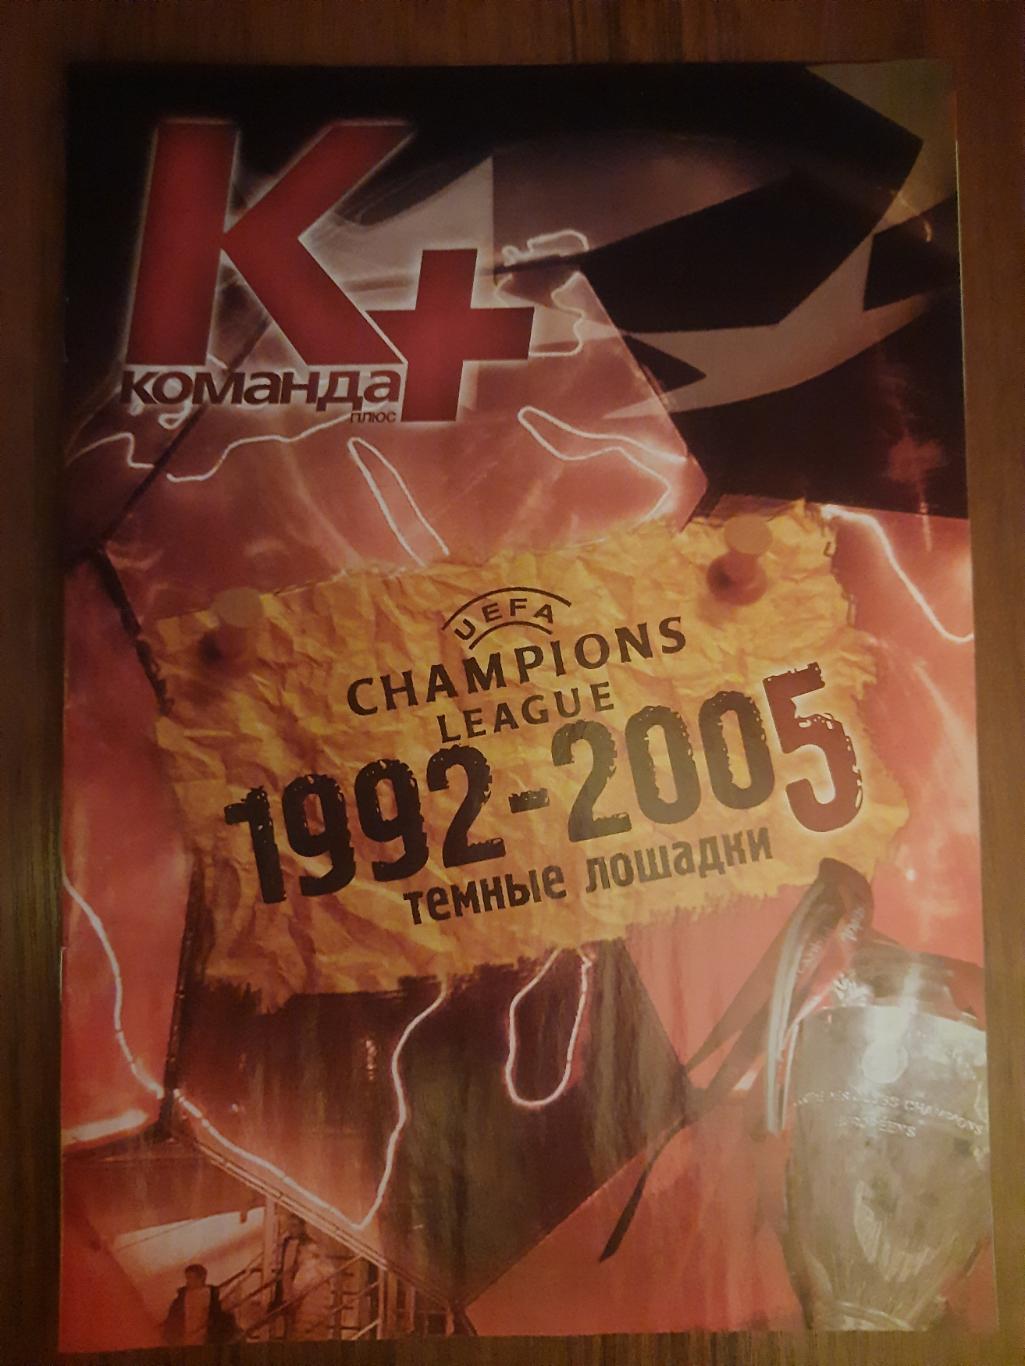 Команда+2005г. Лига Чемпионов 1992-2005 темные лошадки.